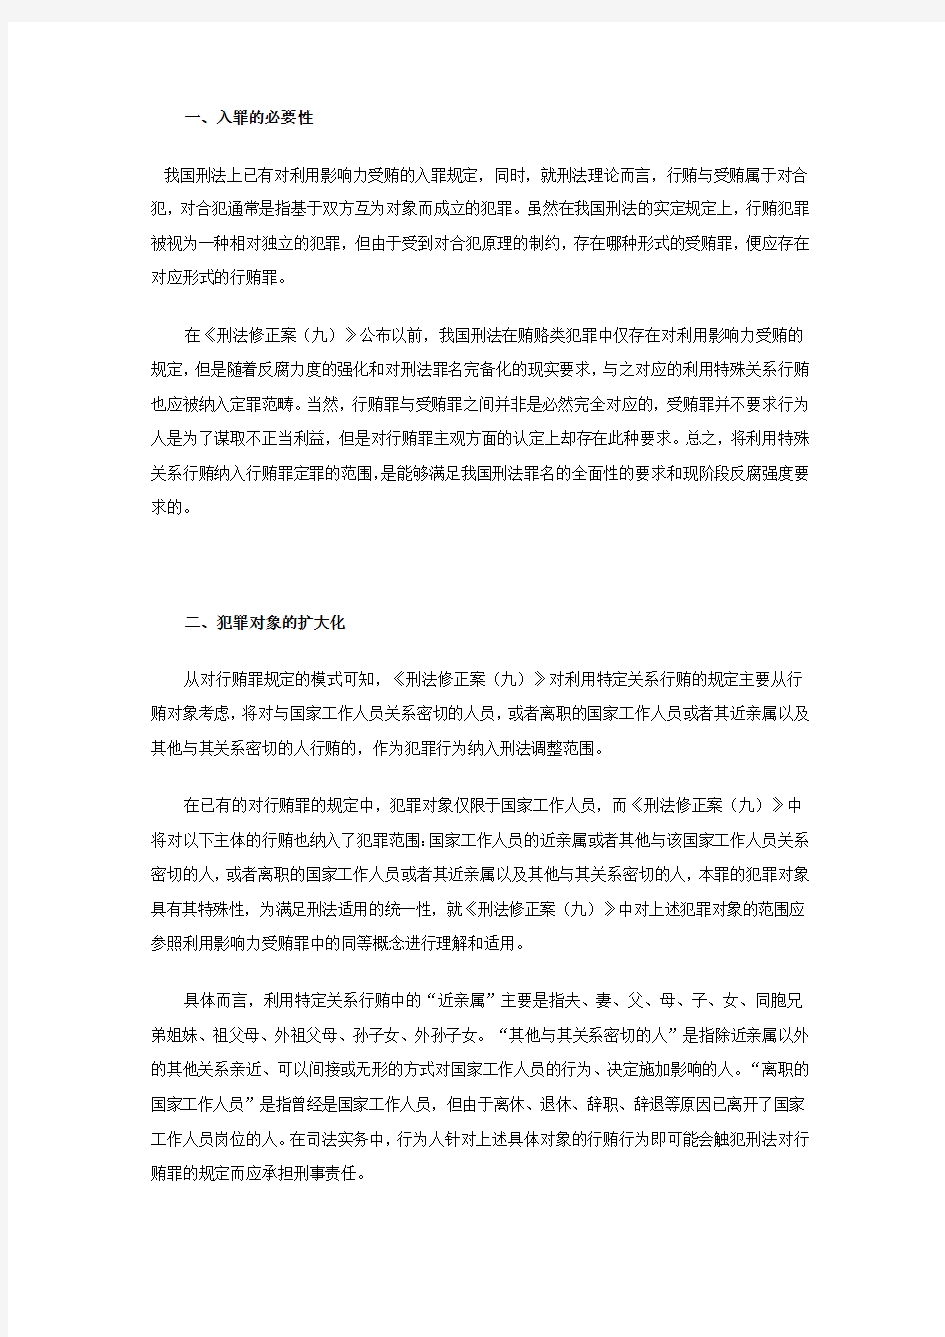 从《中华人民共和国刑法修正案(九)》第四十六条谈对特定关系人行贿行为犯罪化